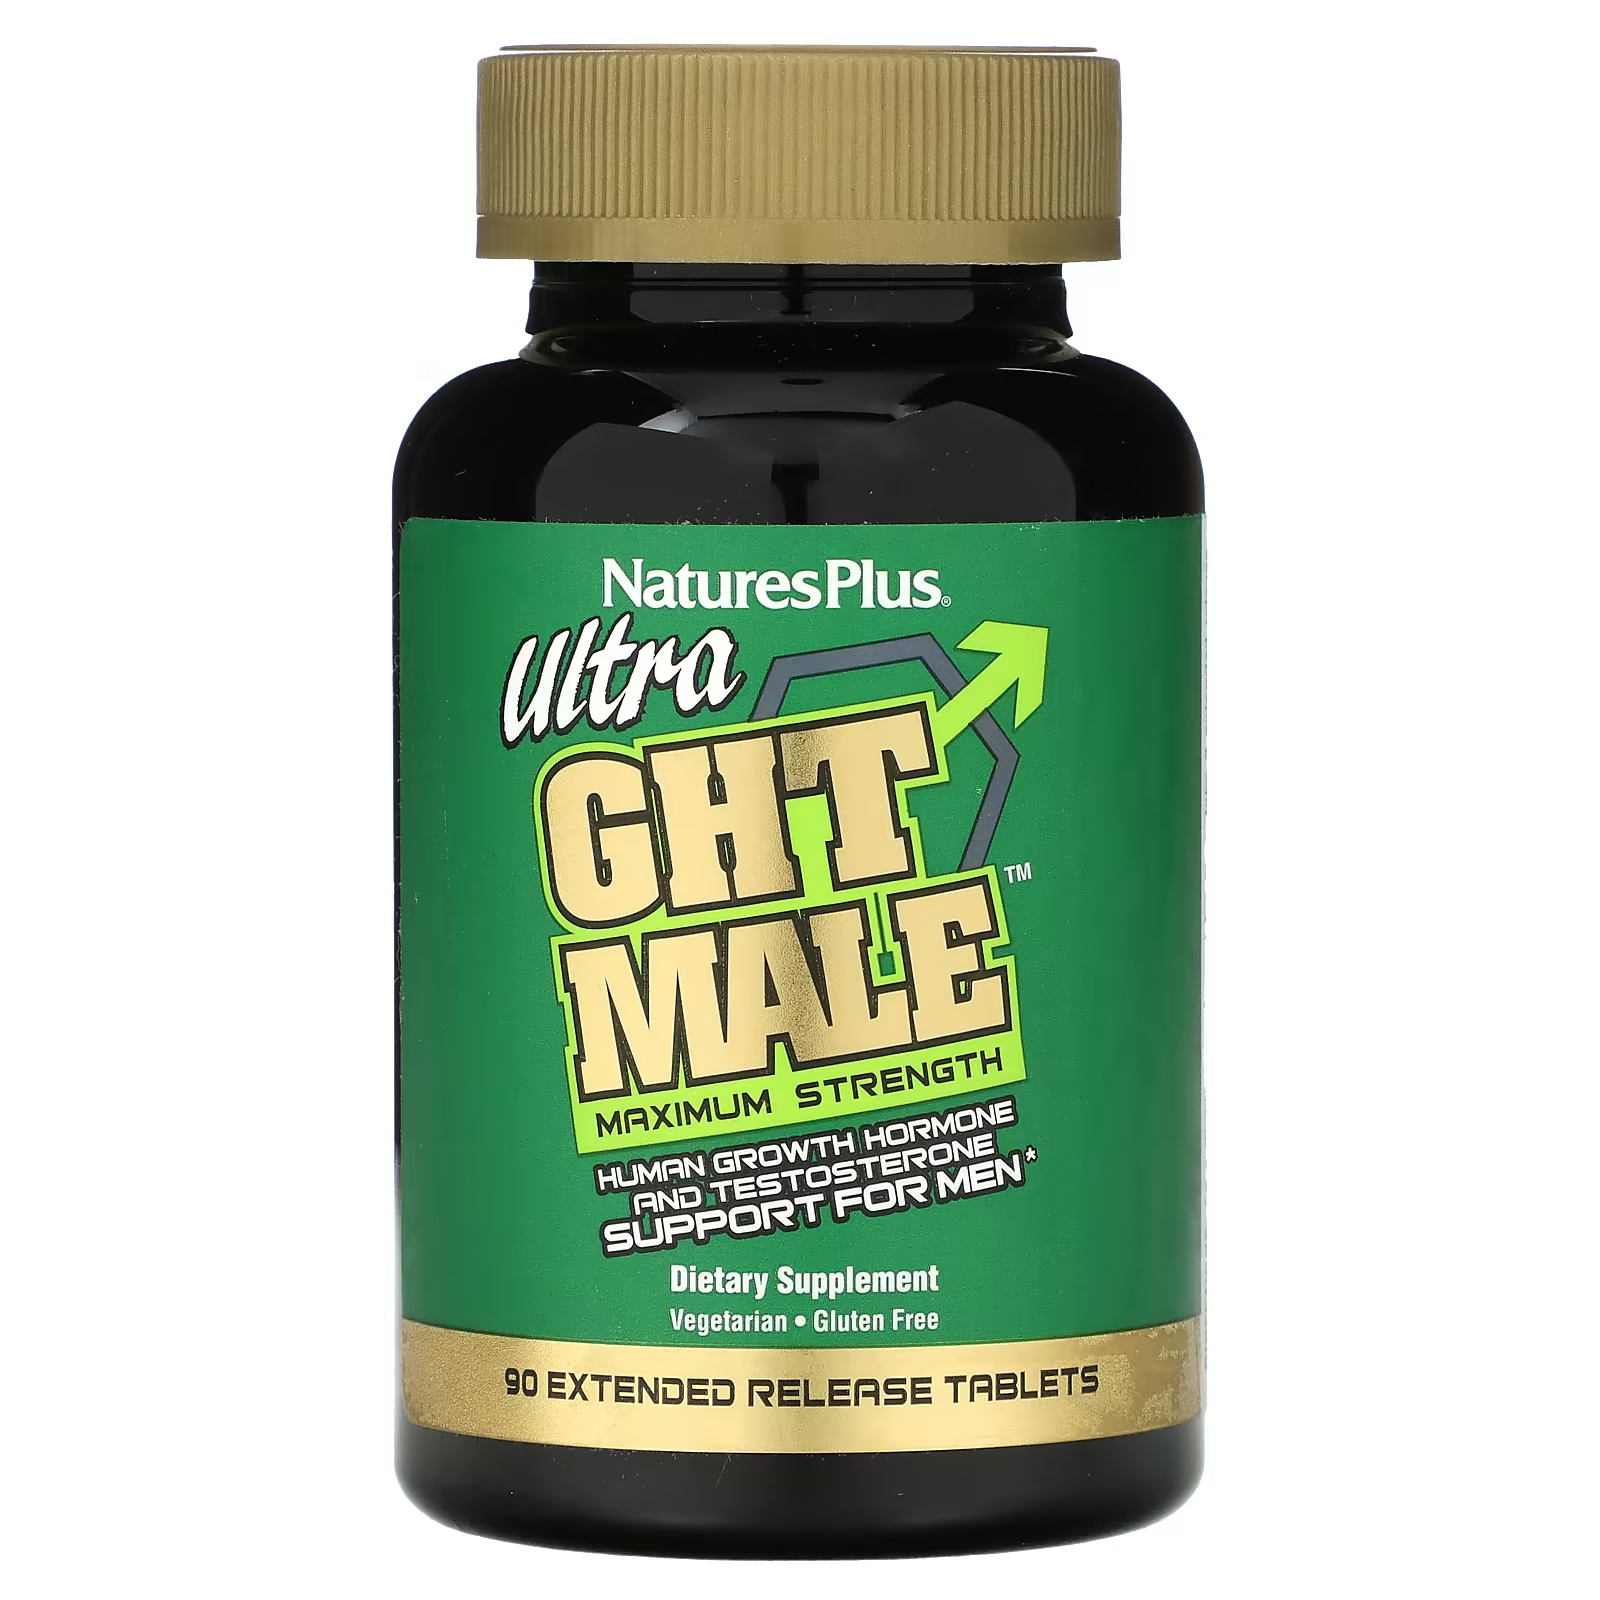 Пищевая добавка NaturesPlus Ultra GHT Male для мужчин, 90 таблеток цена и фото